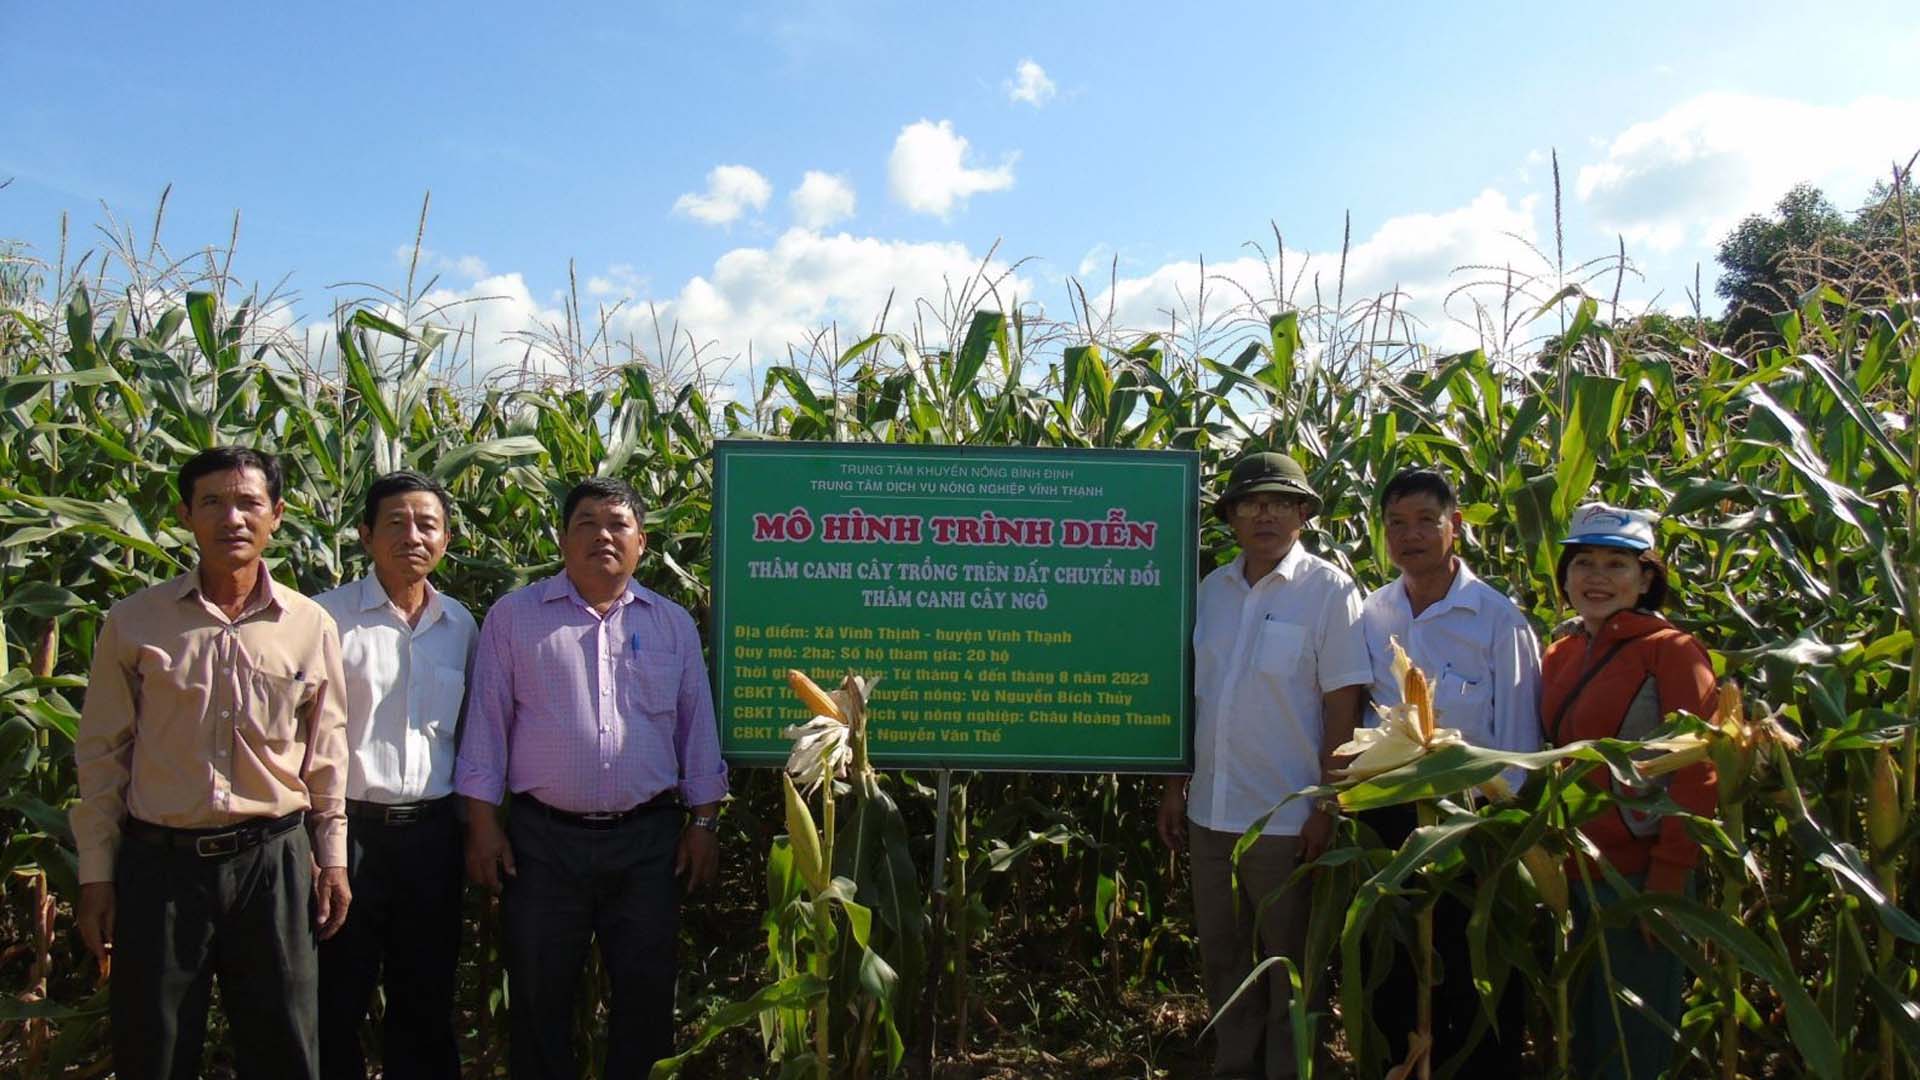 Bình Định: Thâm canh cây ngô trên đất chuyển đổi